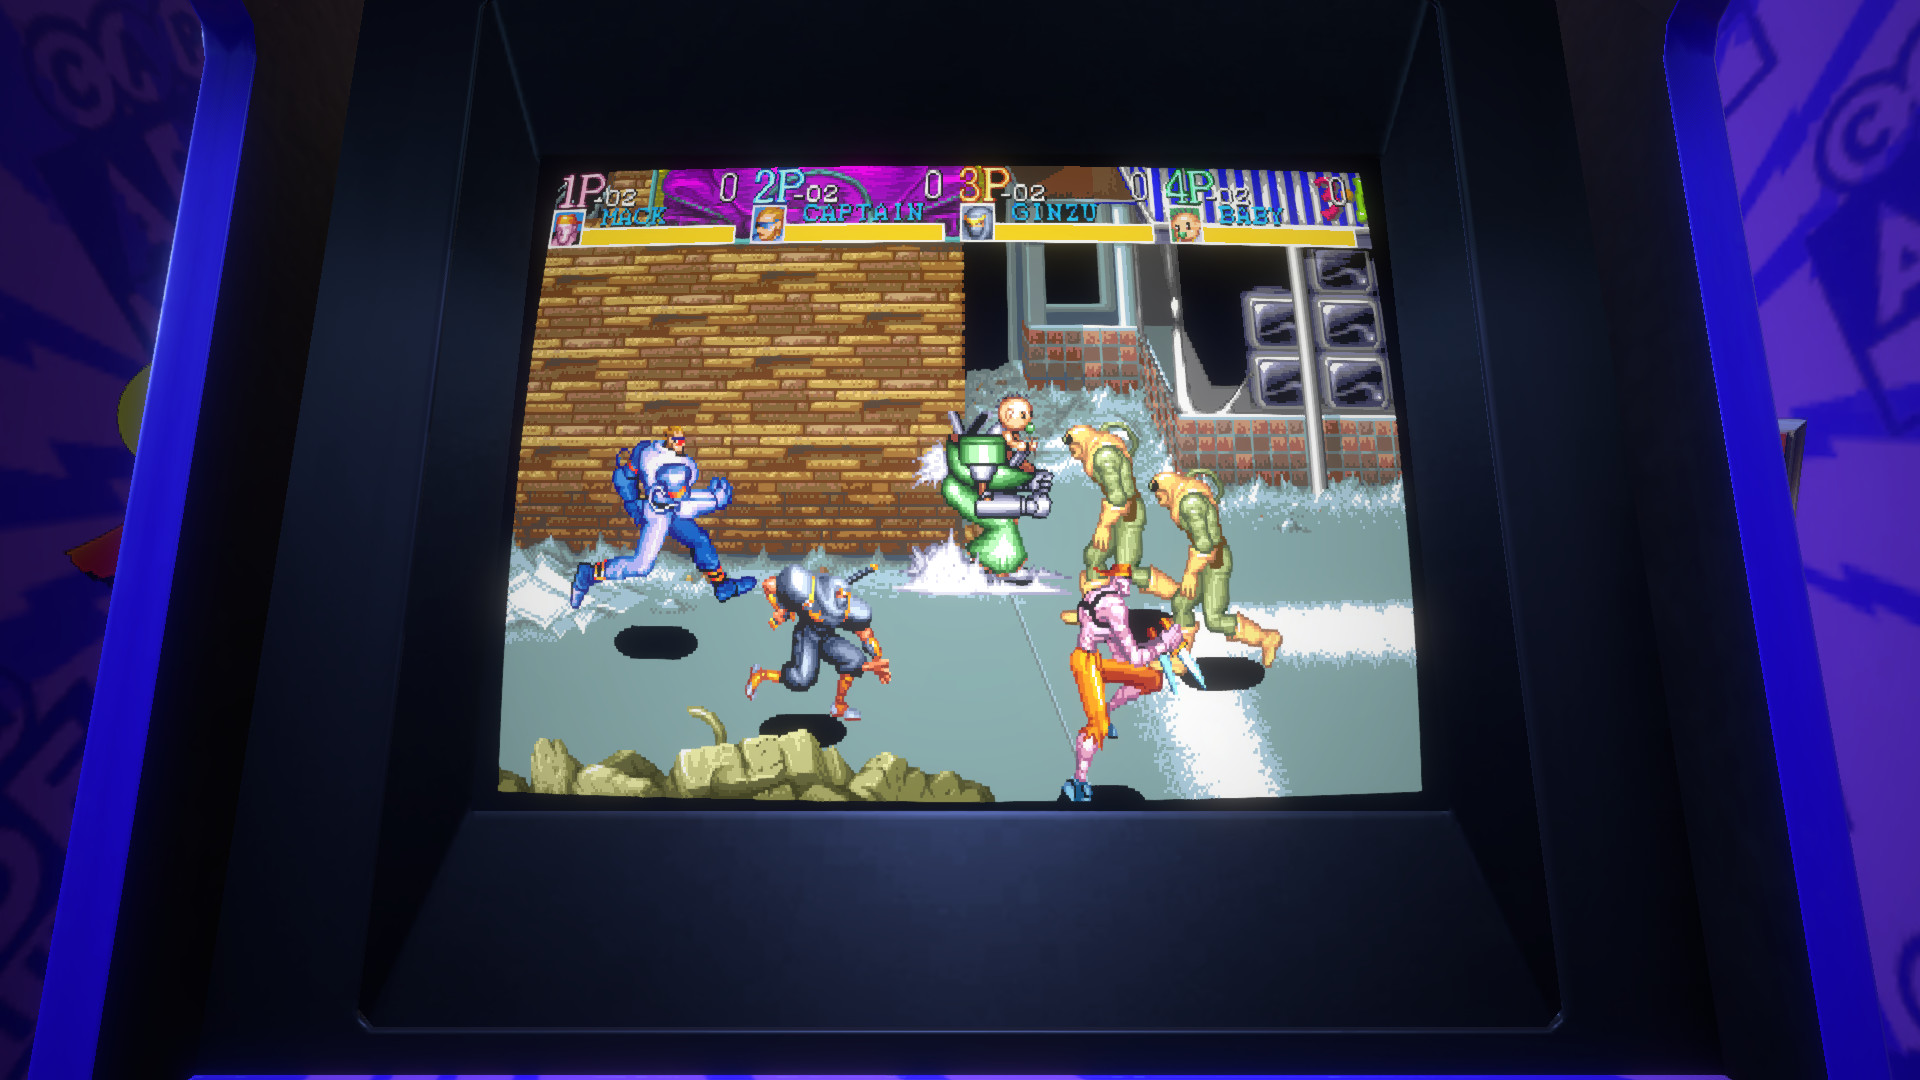 Capcom Arcade Stadium：CAPTAIN COMMANDO on Steam